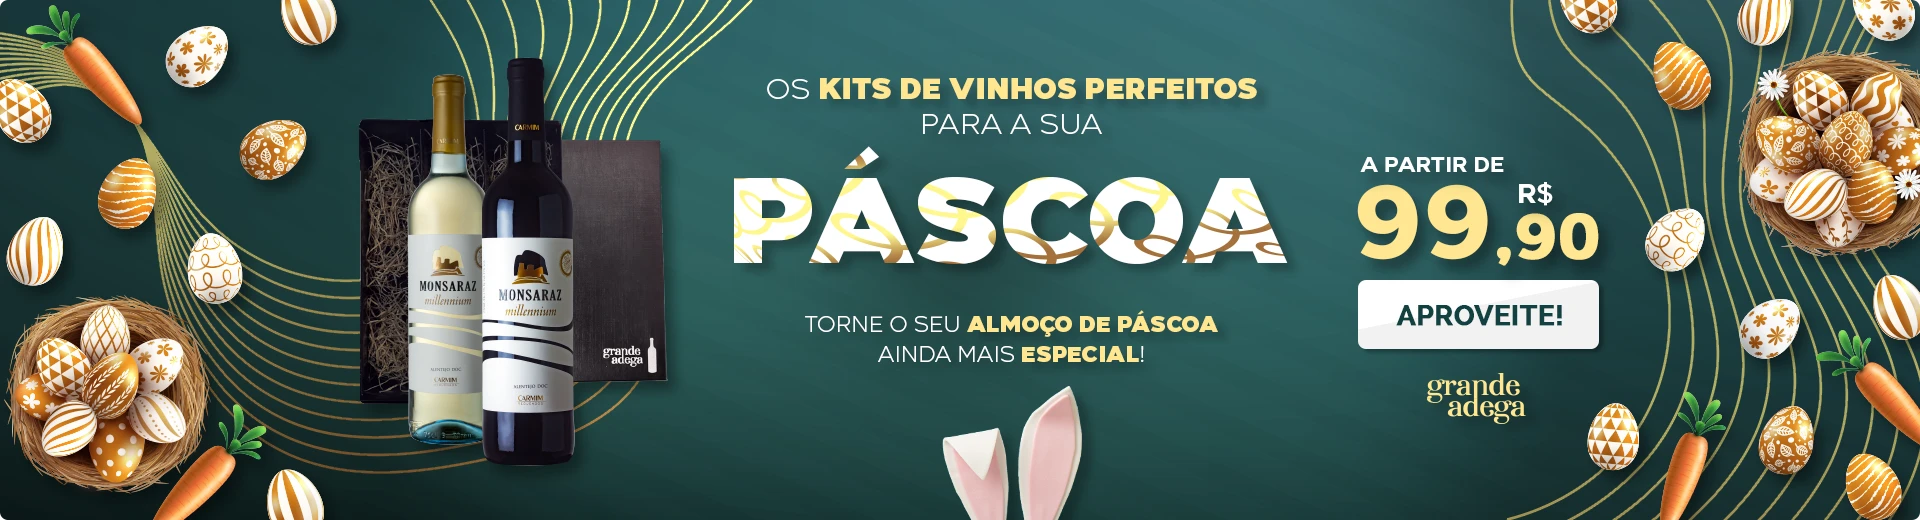 Os Kits de Vinhos Perfeitos para a sua Páscoa